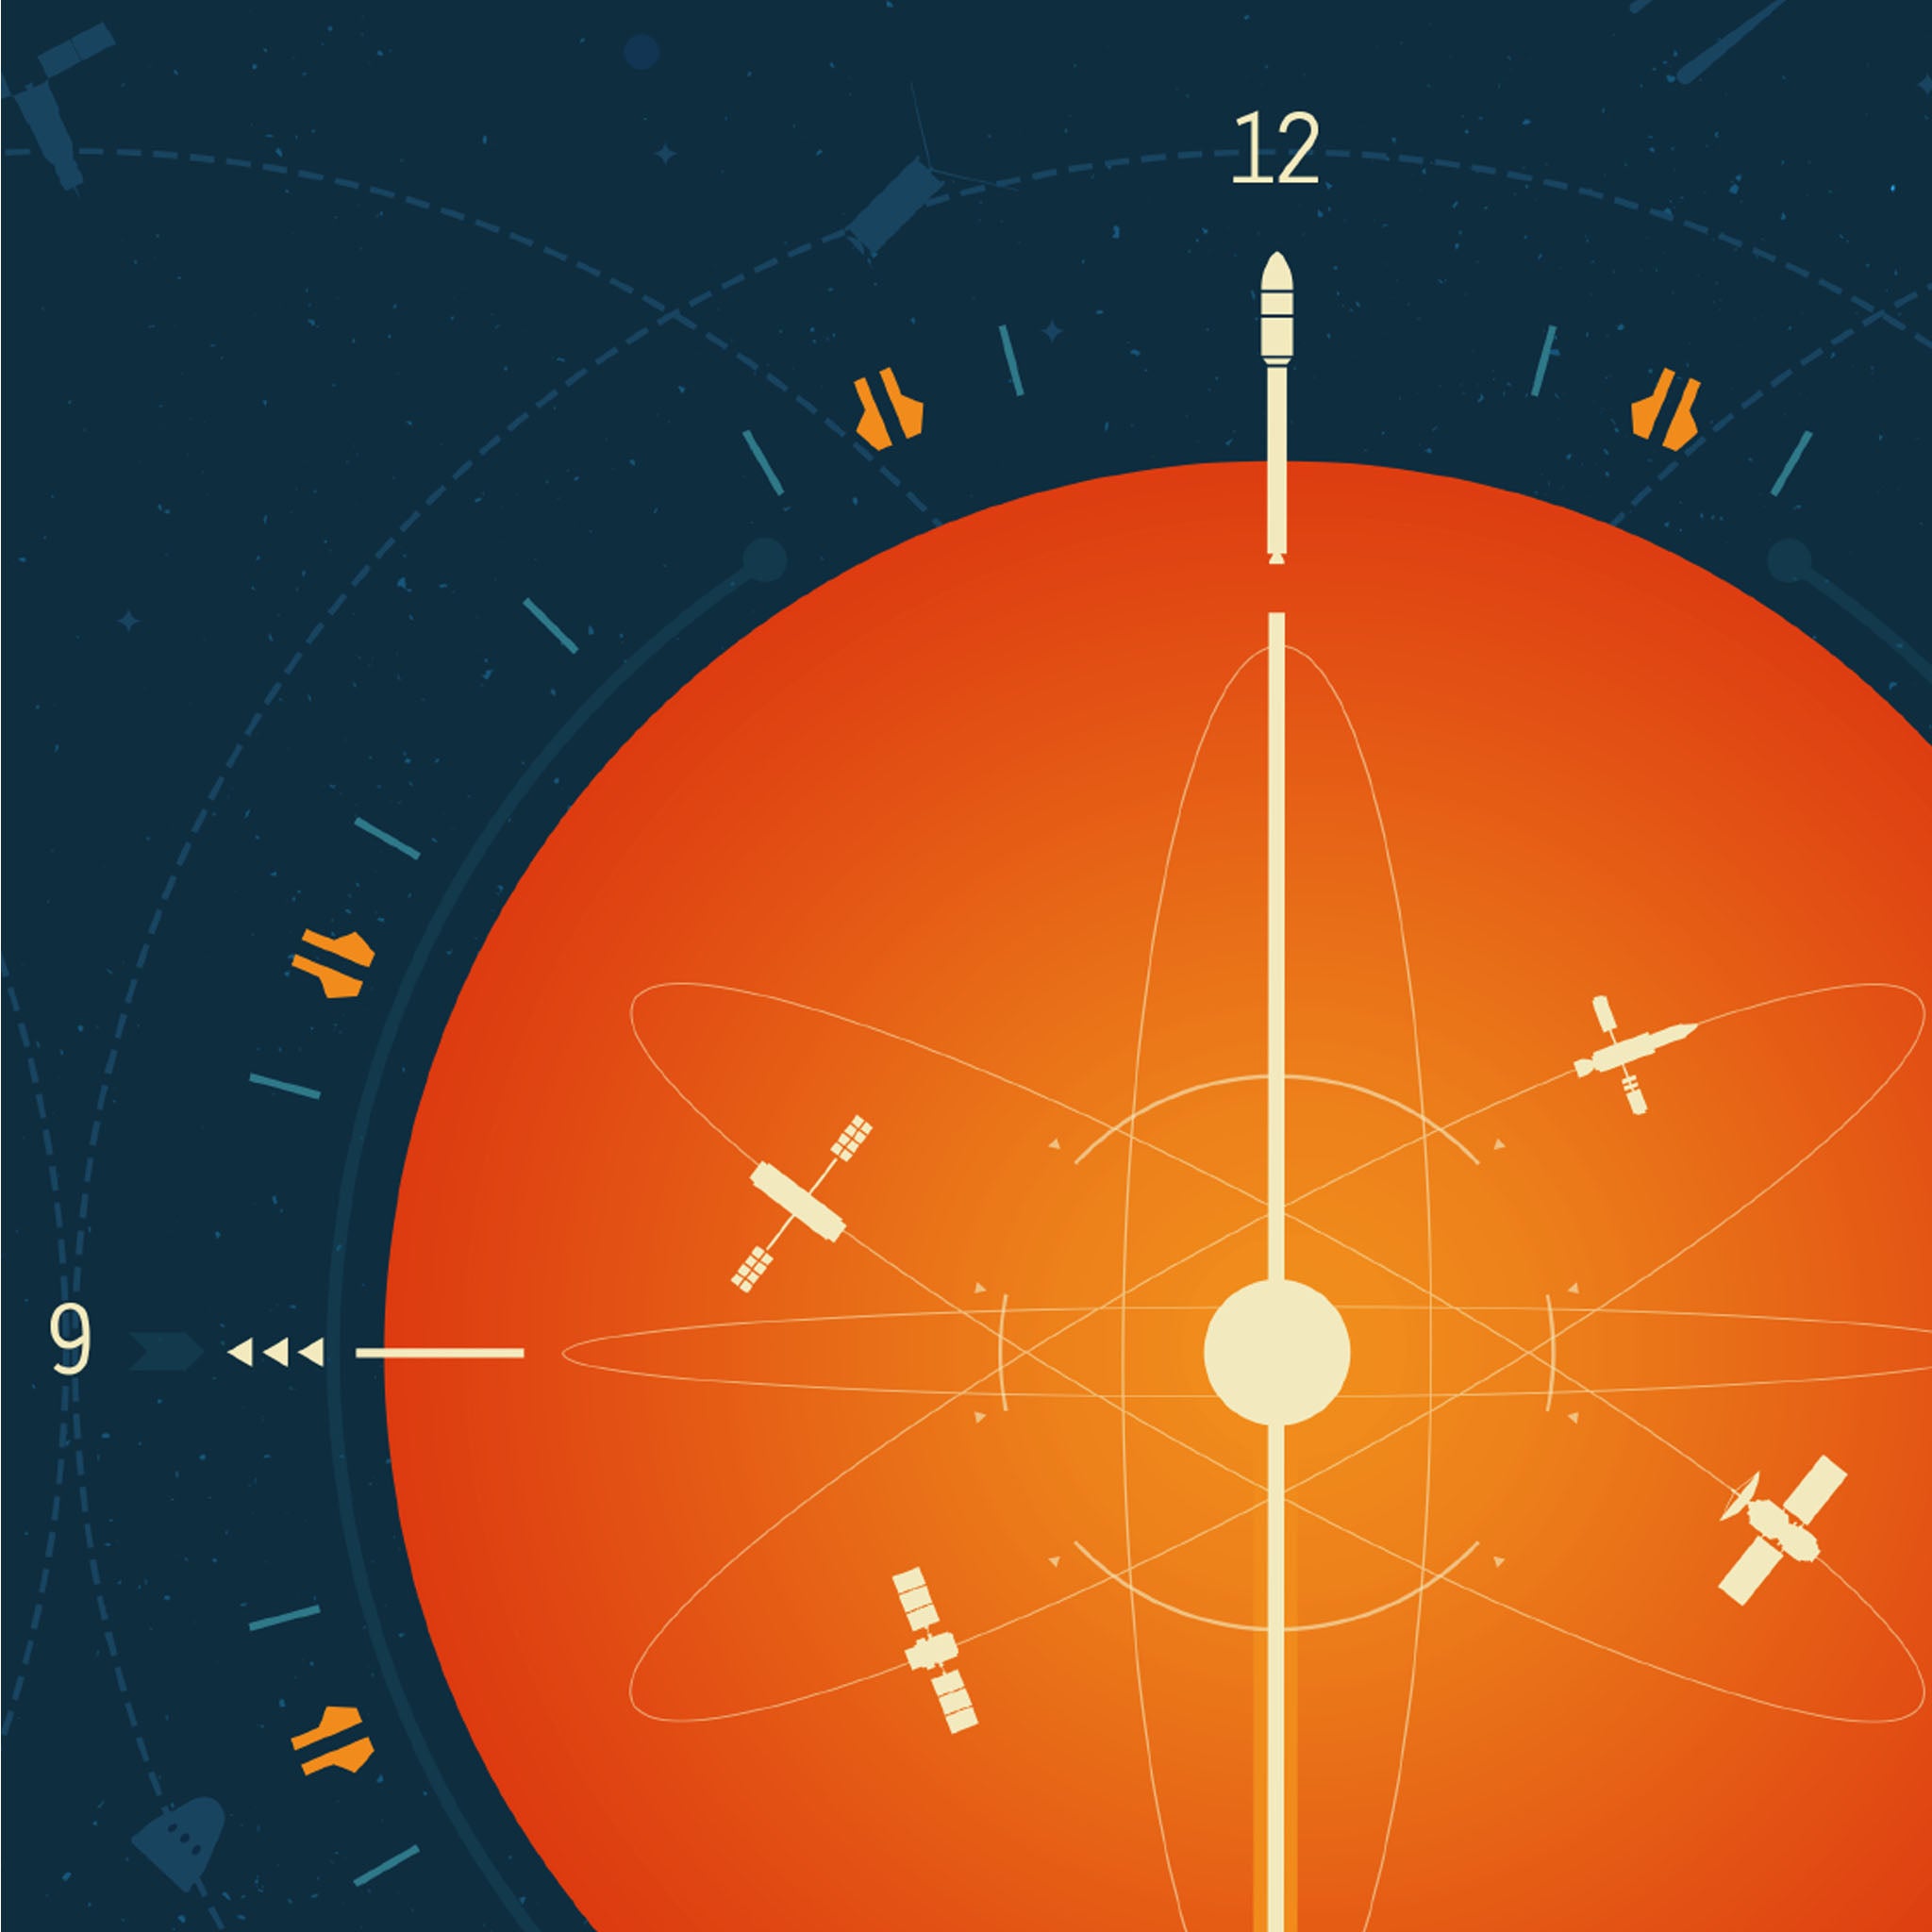 Atomic Clock Orange - Plakat NASA